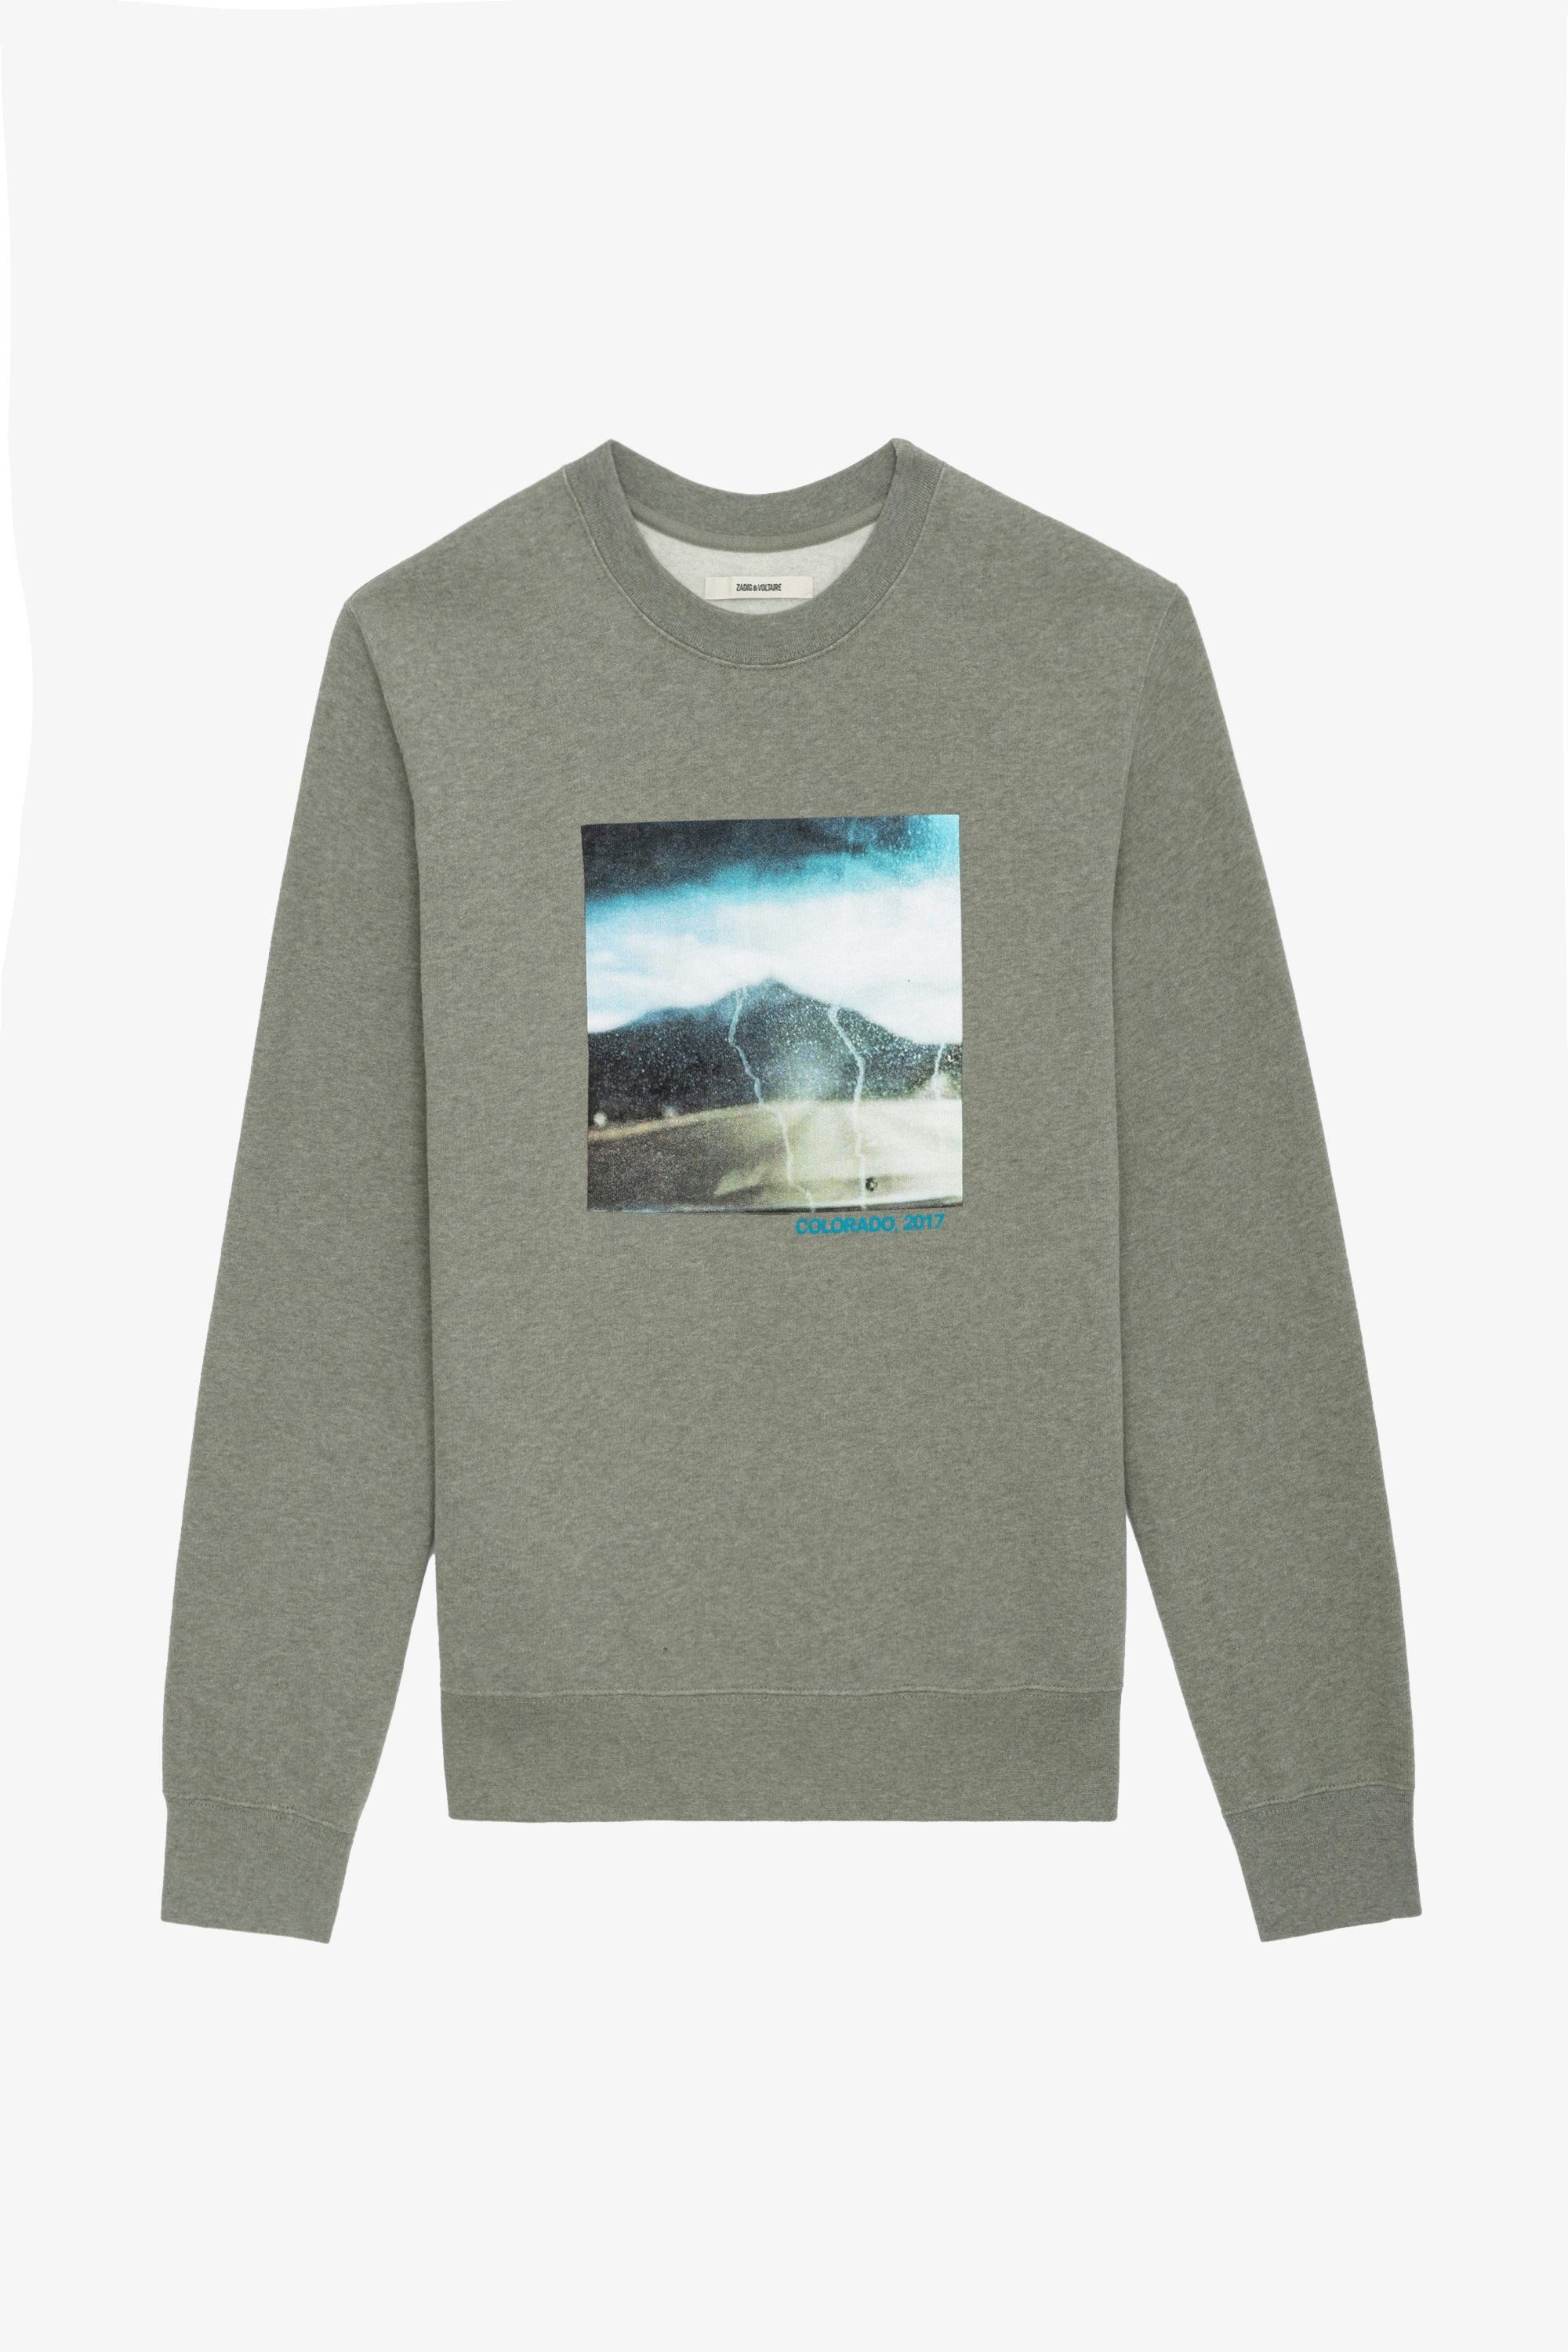 Simba Photoprint Sweatshirt - Grey long-sleeved sweatshirt with photoprint and printed slogan.